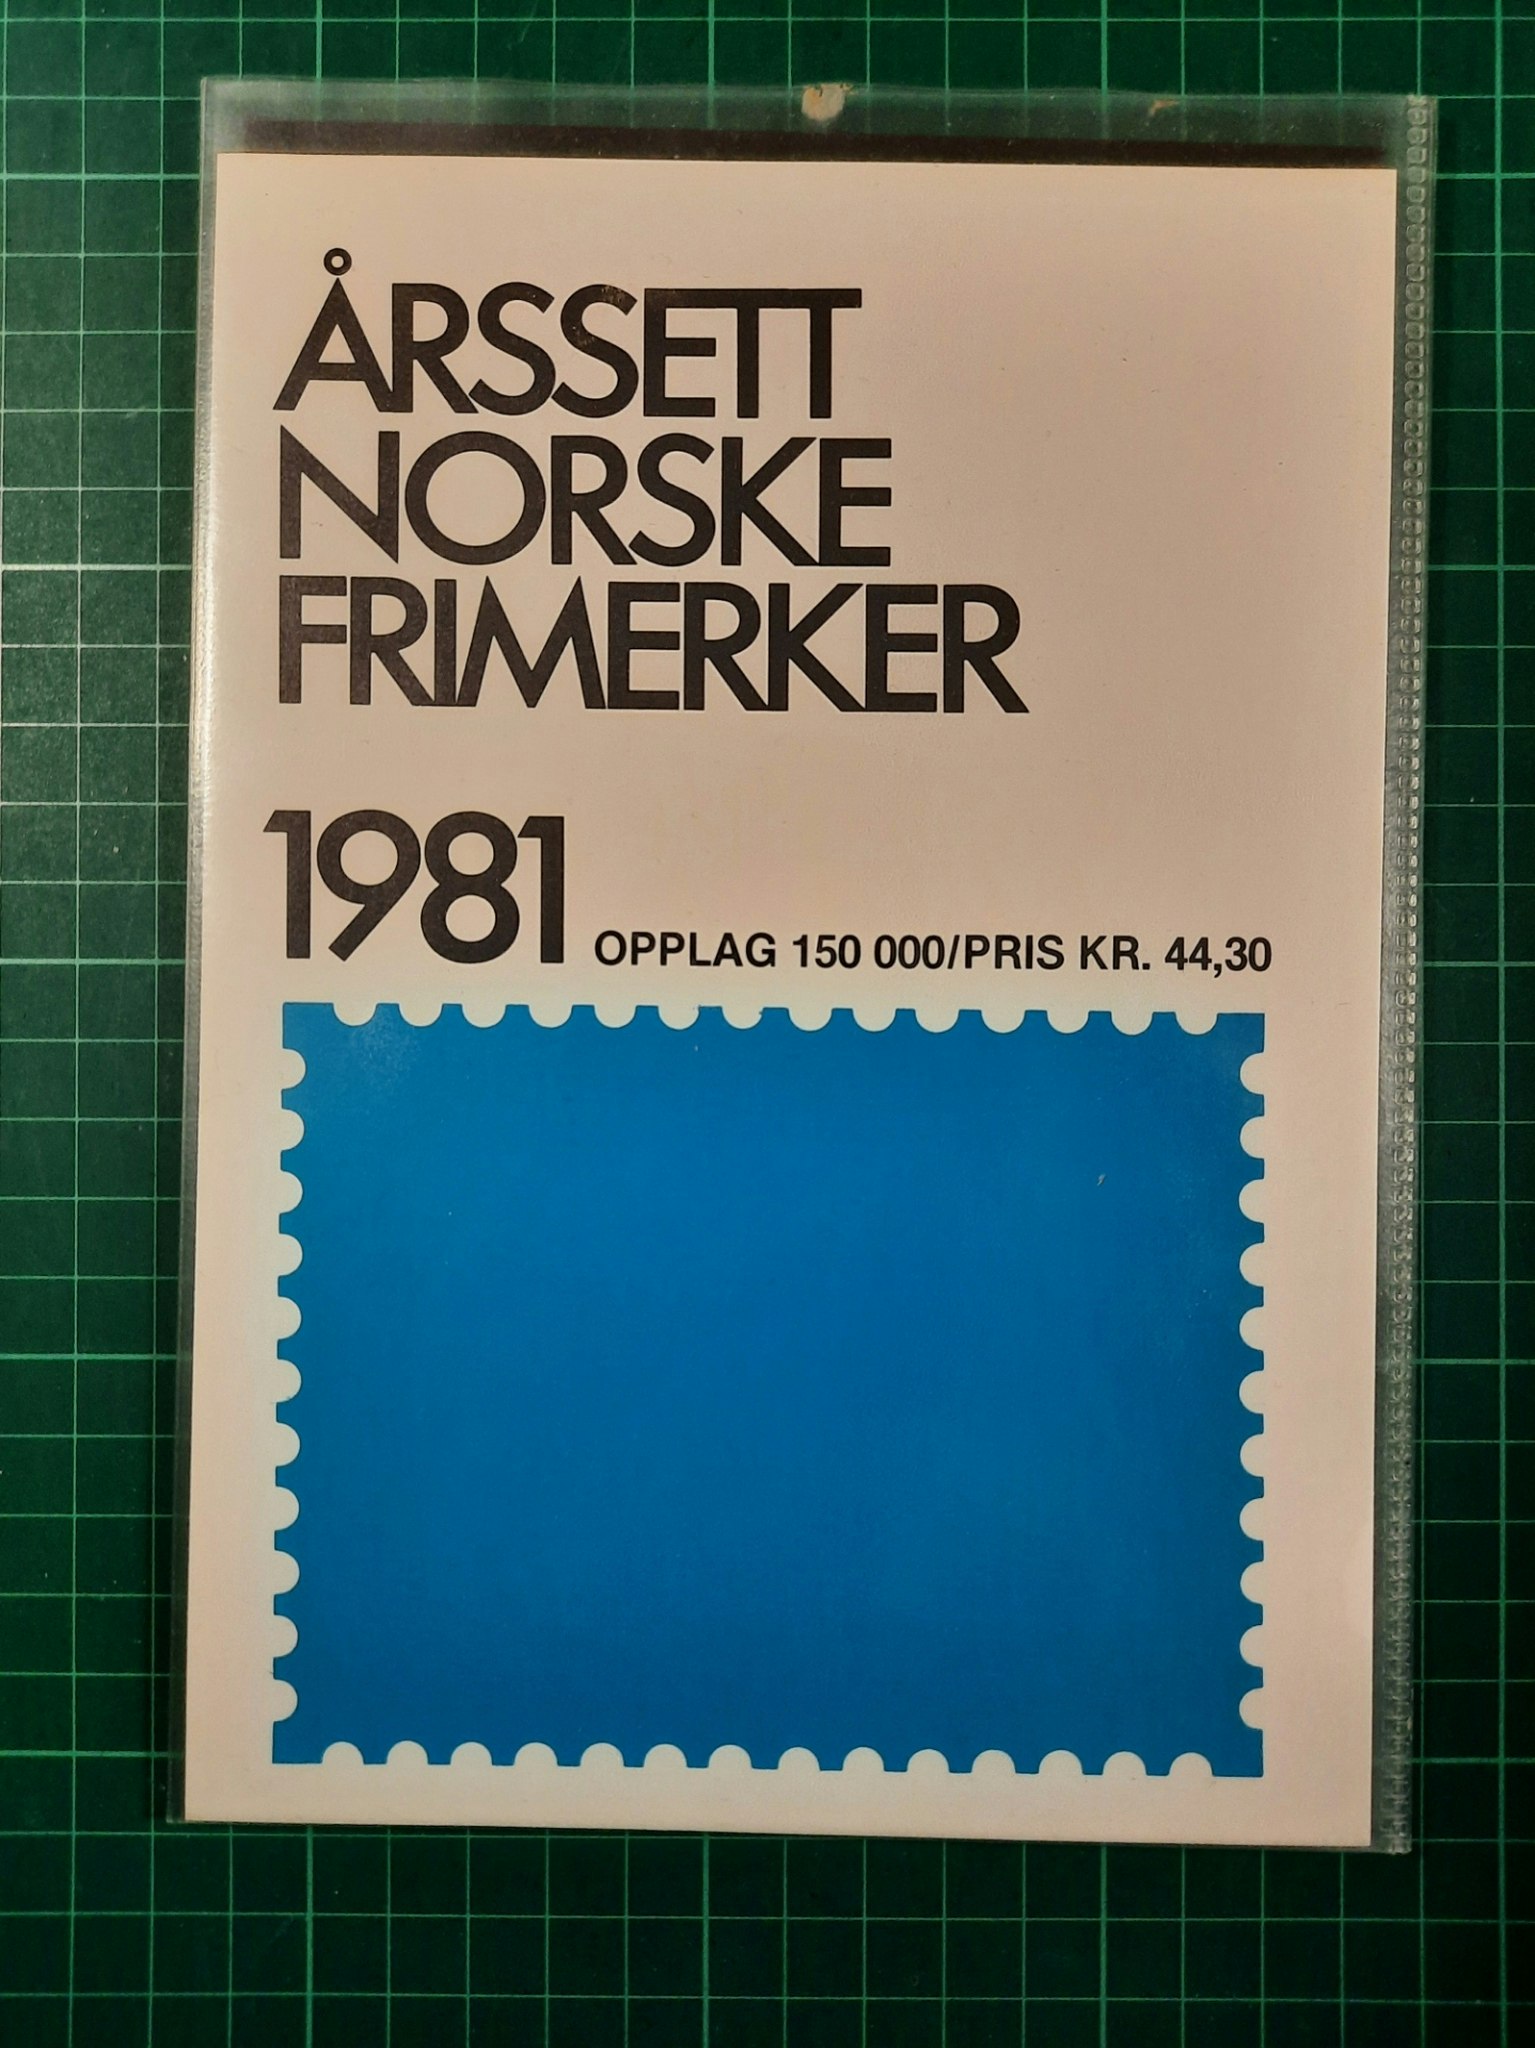 Årssett Norske frimerker 1981 - Dippy.no